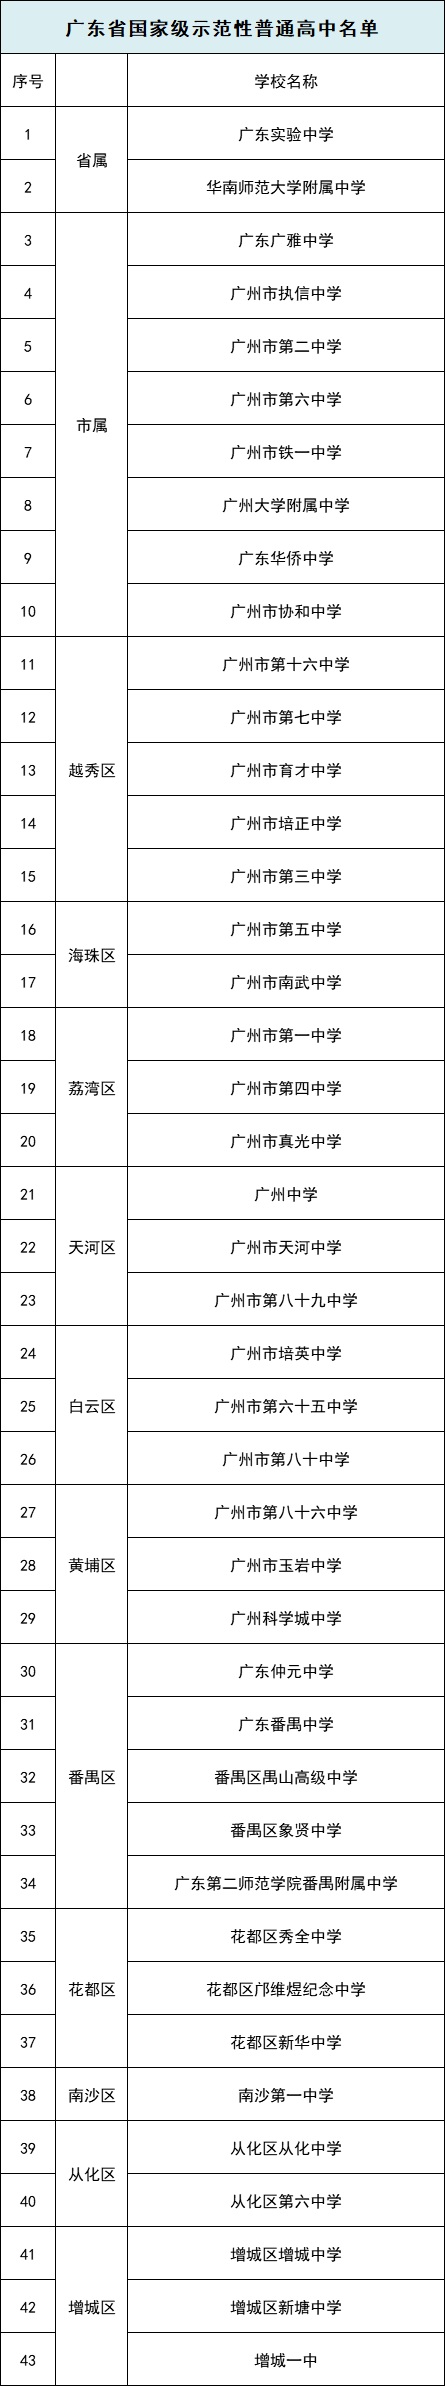 2020年广州高中高考_2020年广东县级高中高优率排名,江门2所学校包揽前二